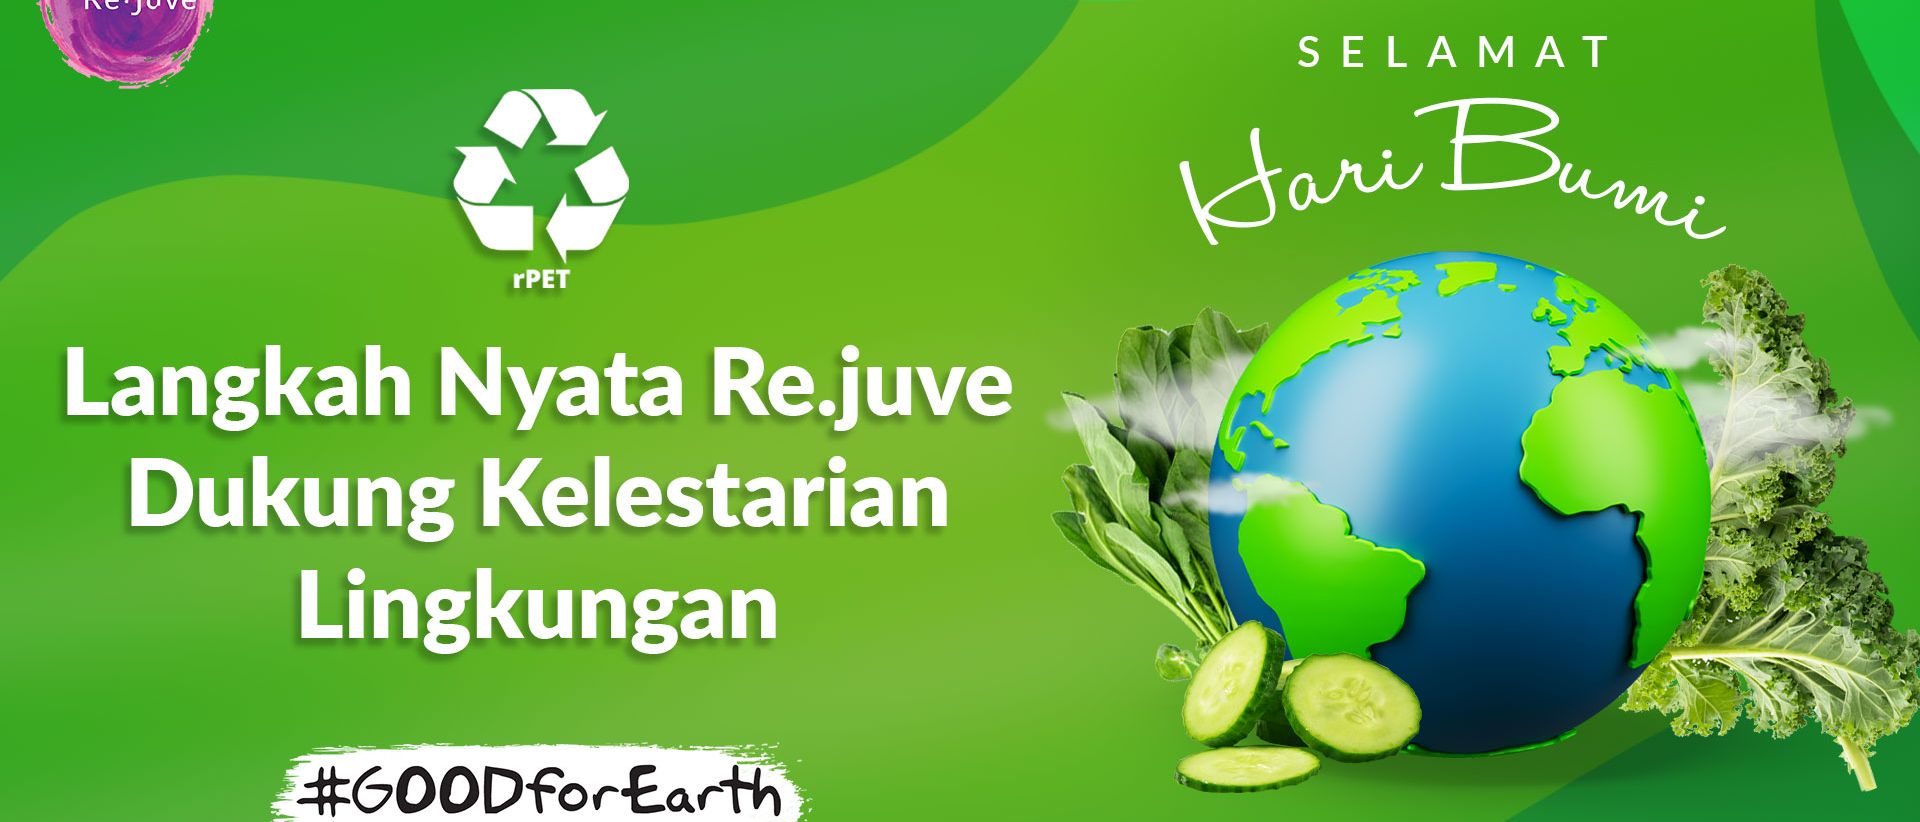 Kampanye peduli lingkungan Re.juve Towards Zero Waste